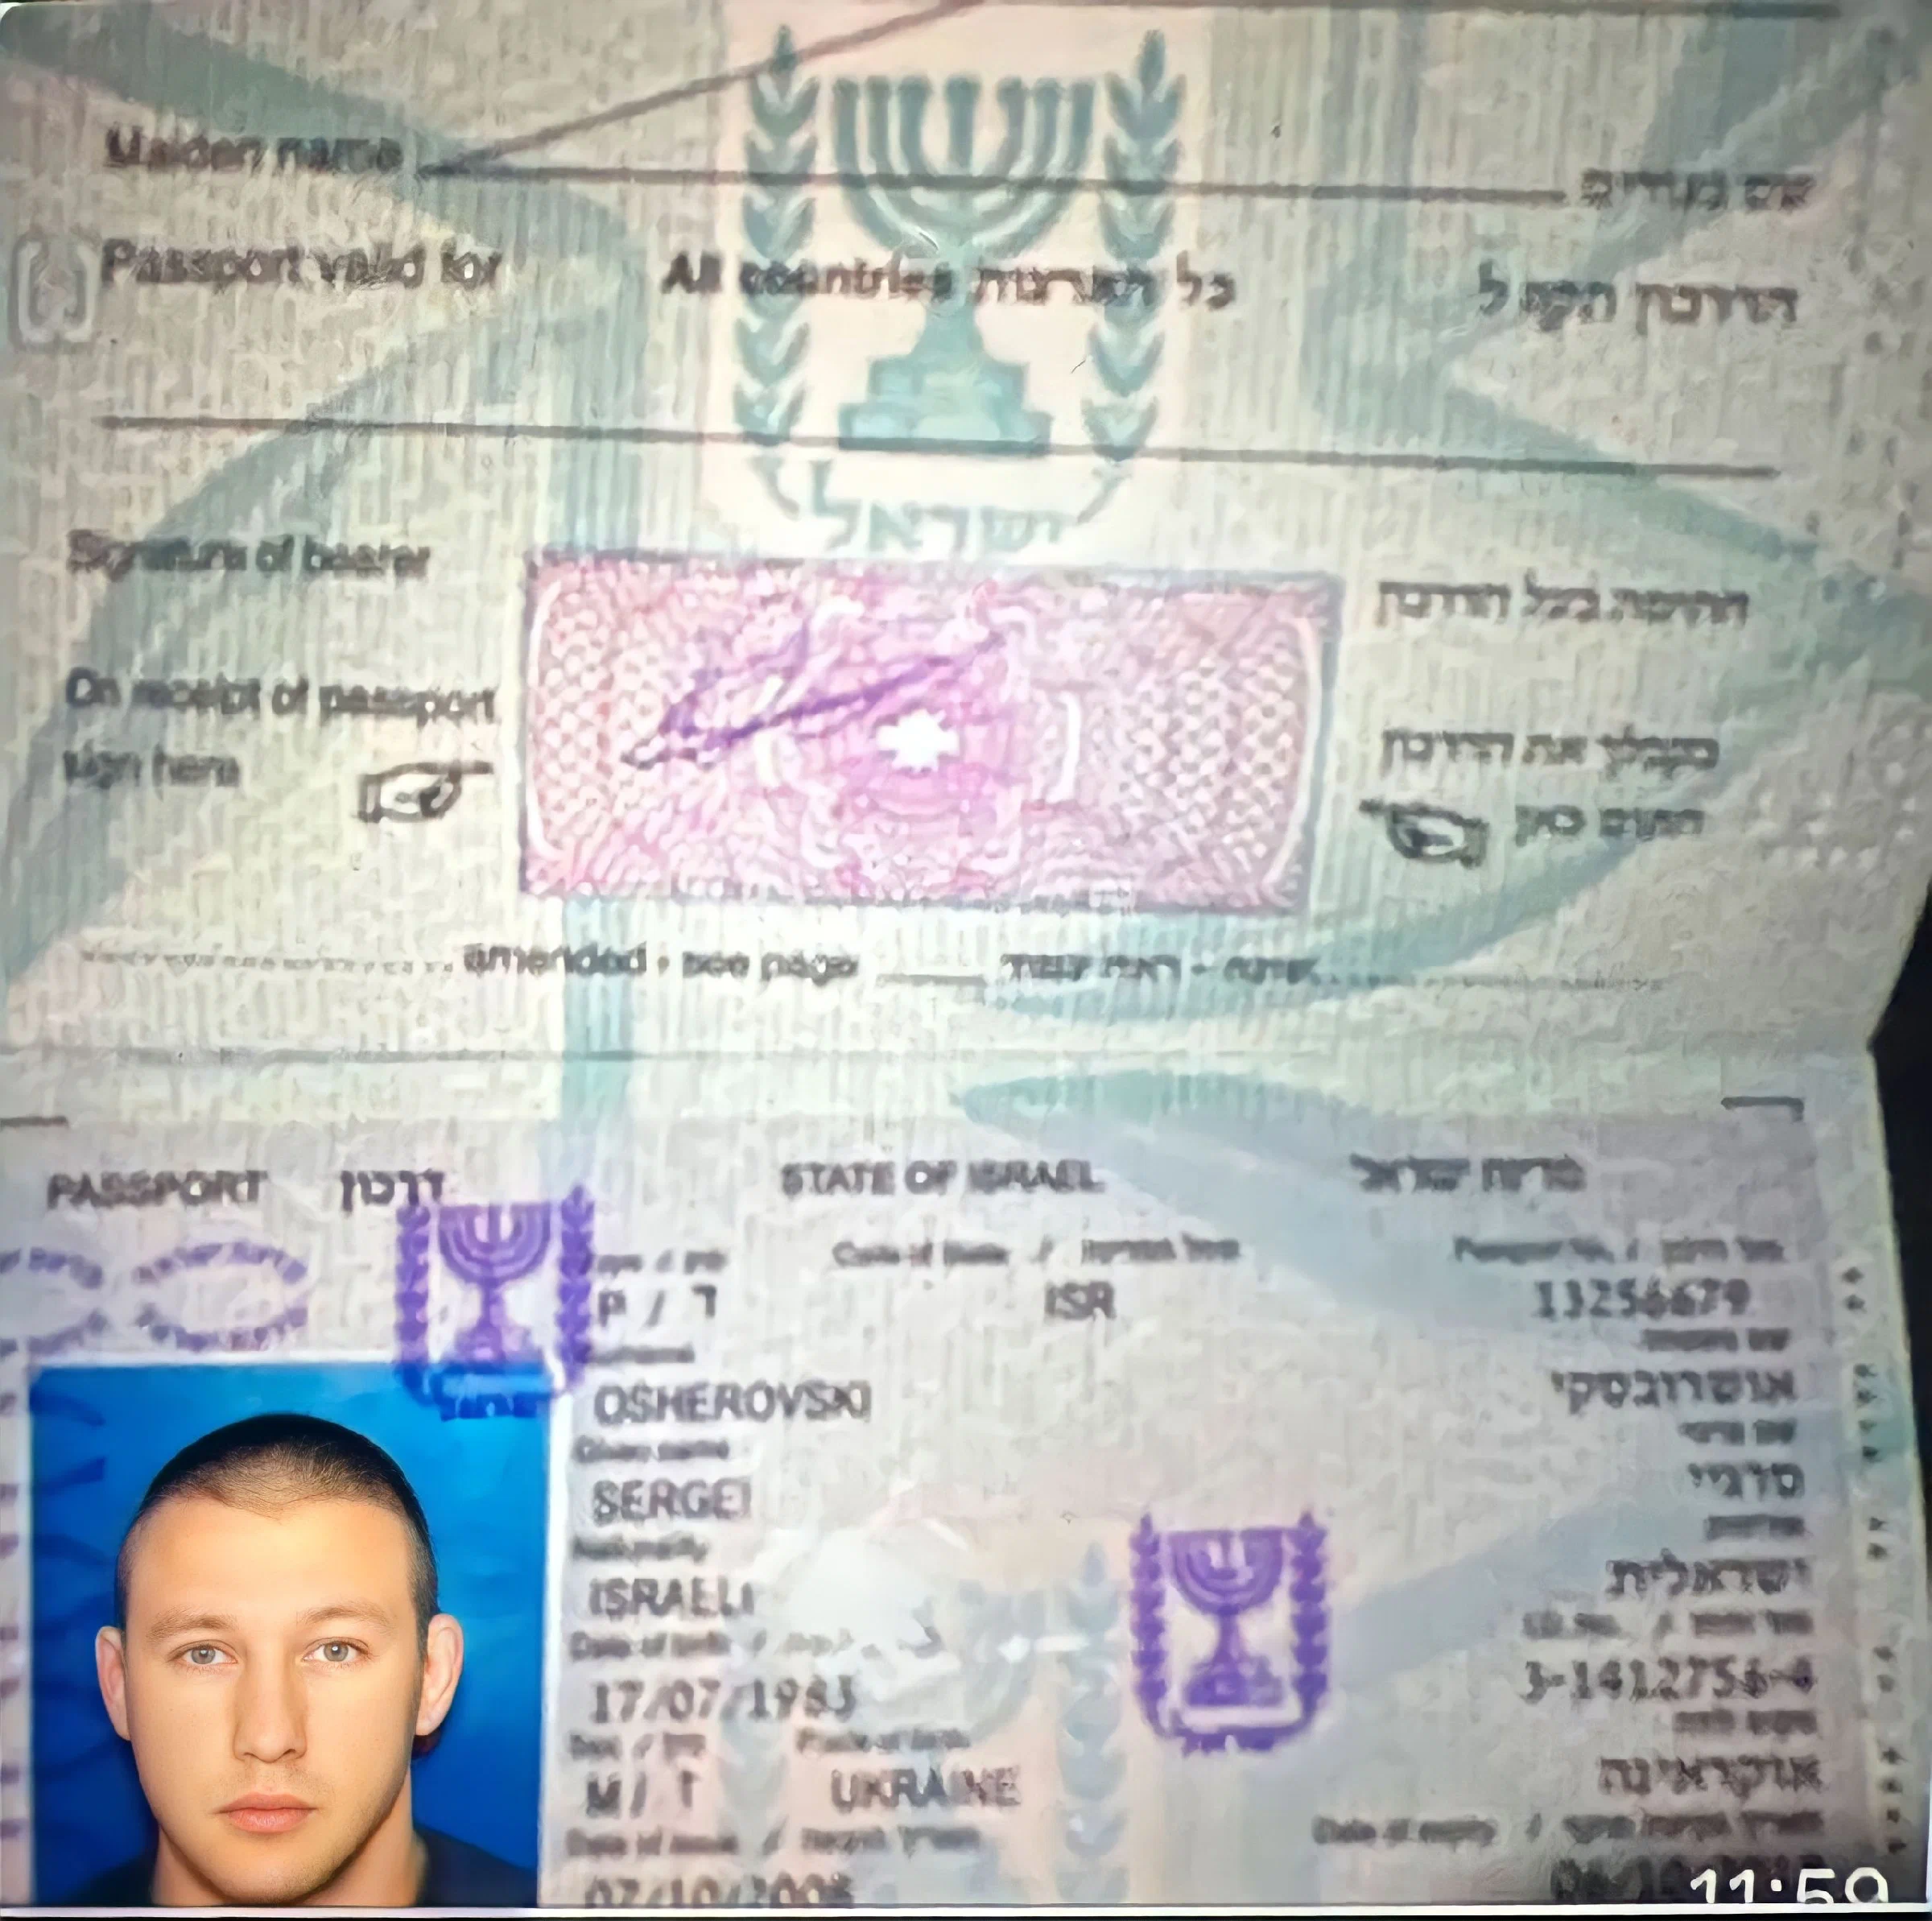 Сергей Леонидович Ошеровский паспорт Израиля 1